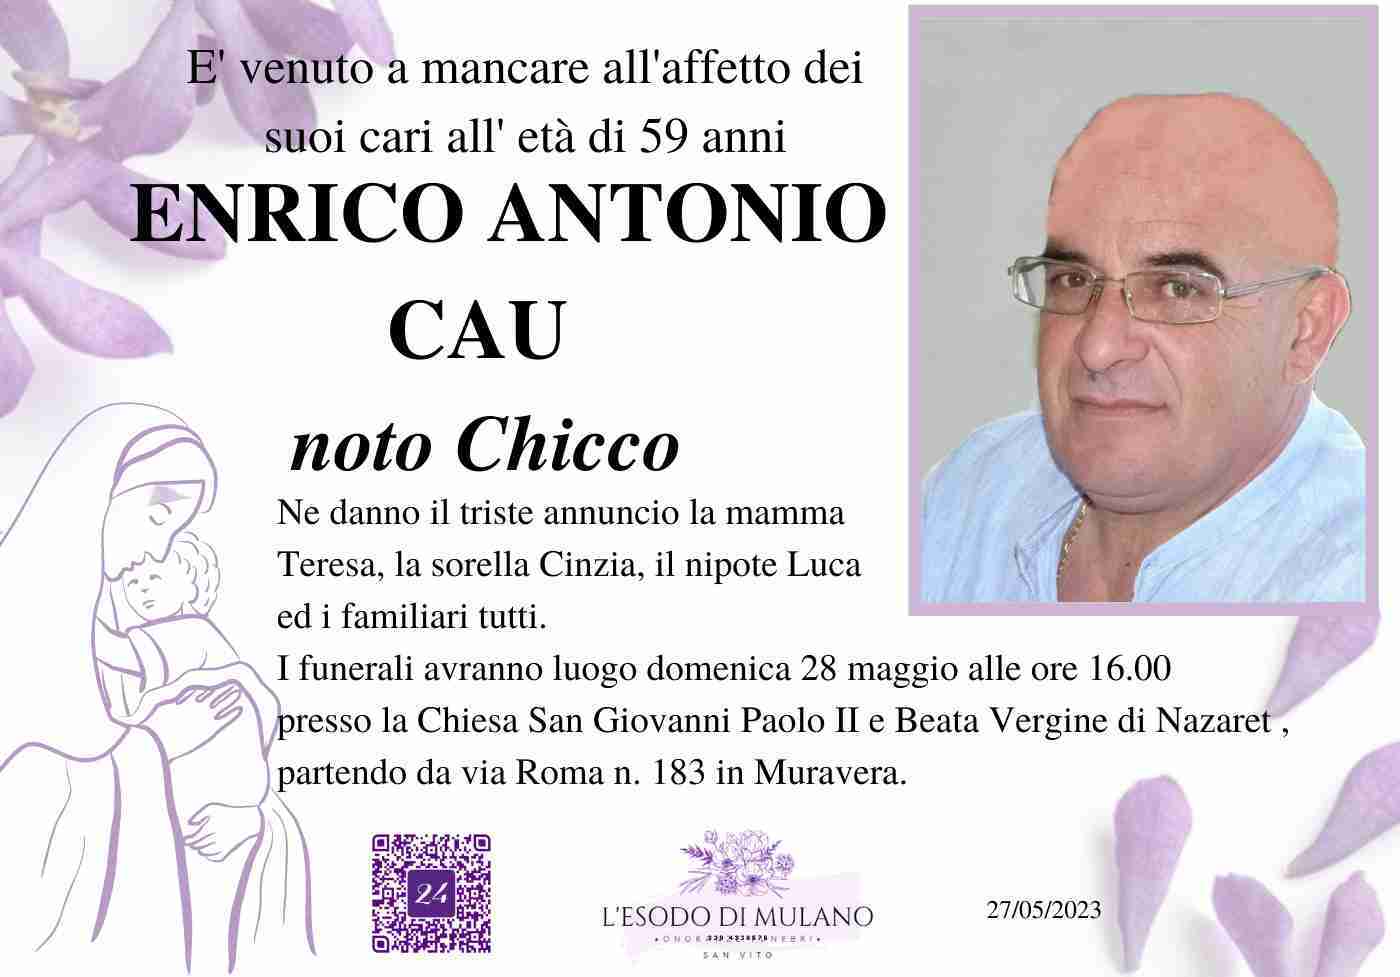 Enrico Antonio Cau